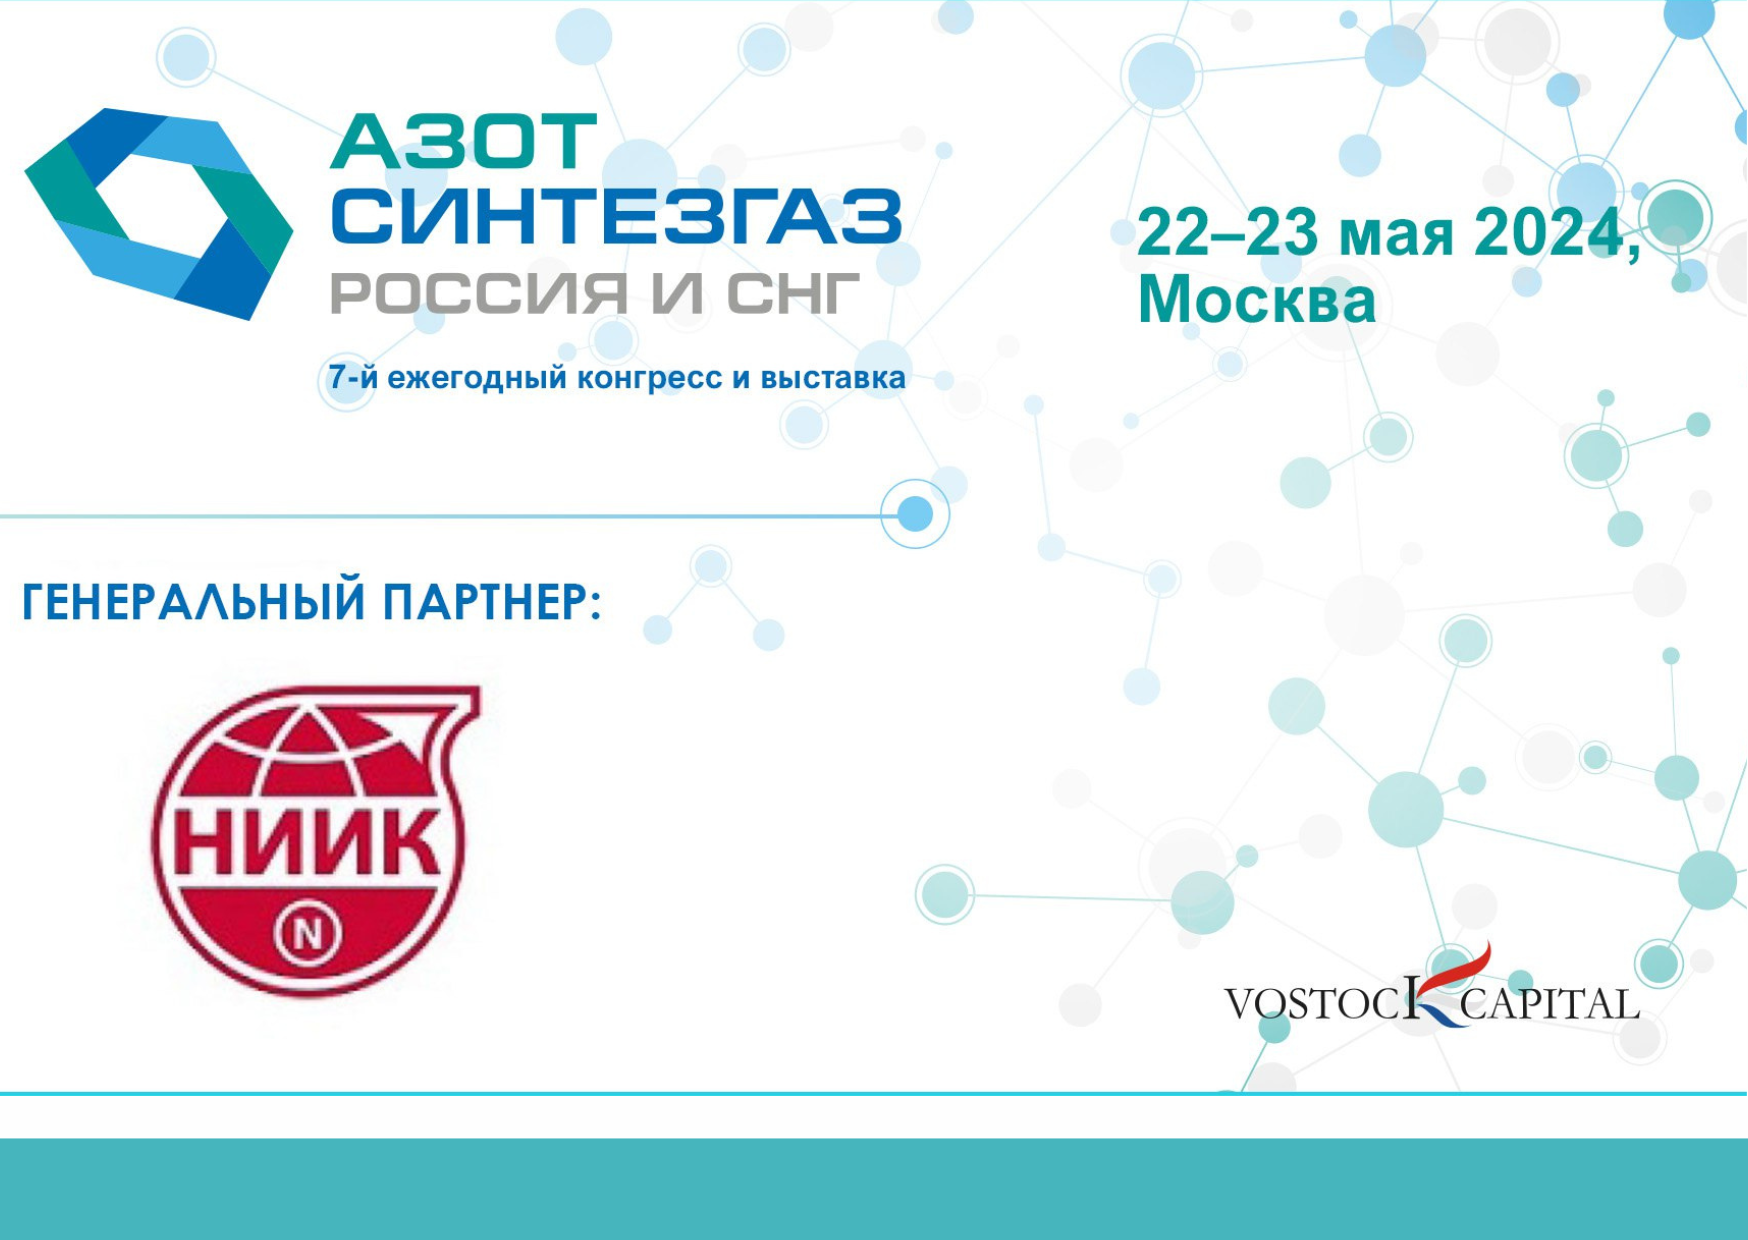 НИИК выступит в качестве генерального партнера на 7 ежегодном конгрессе и выставке «Азот Синтезгаз Россия и СНГ»